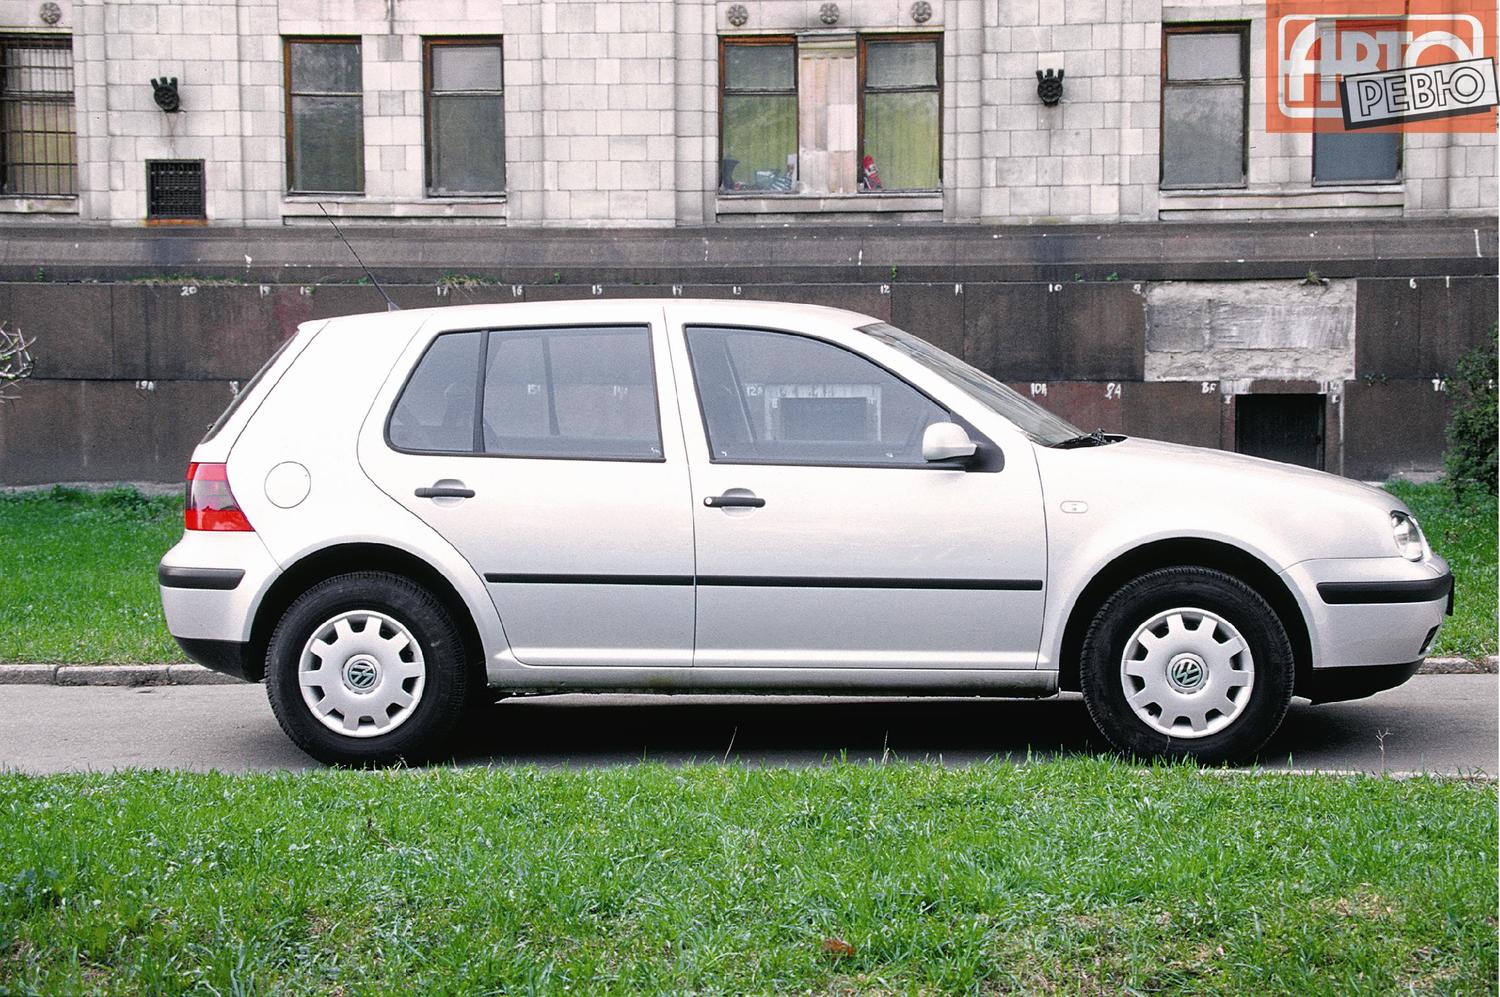 хэтчбек 5 дв. Volkswagen Golf 1997 - 2003г выпуска модификация 1.4 MT (75 л.с.)